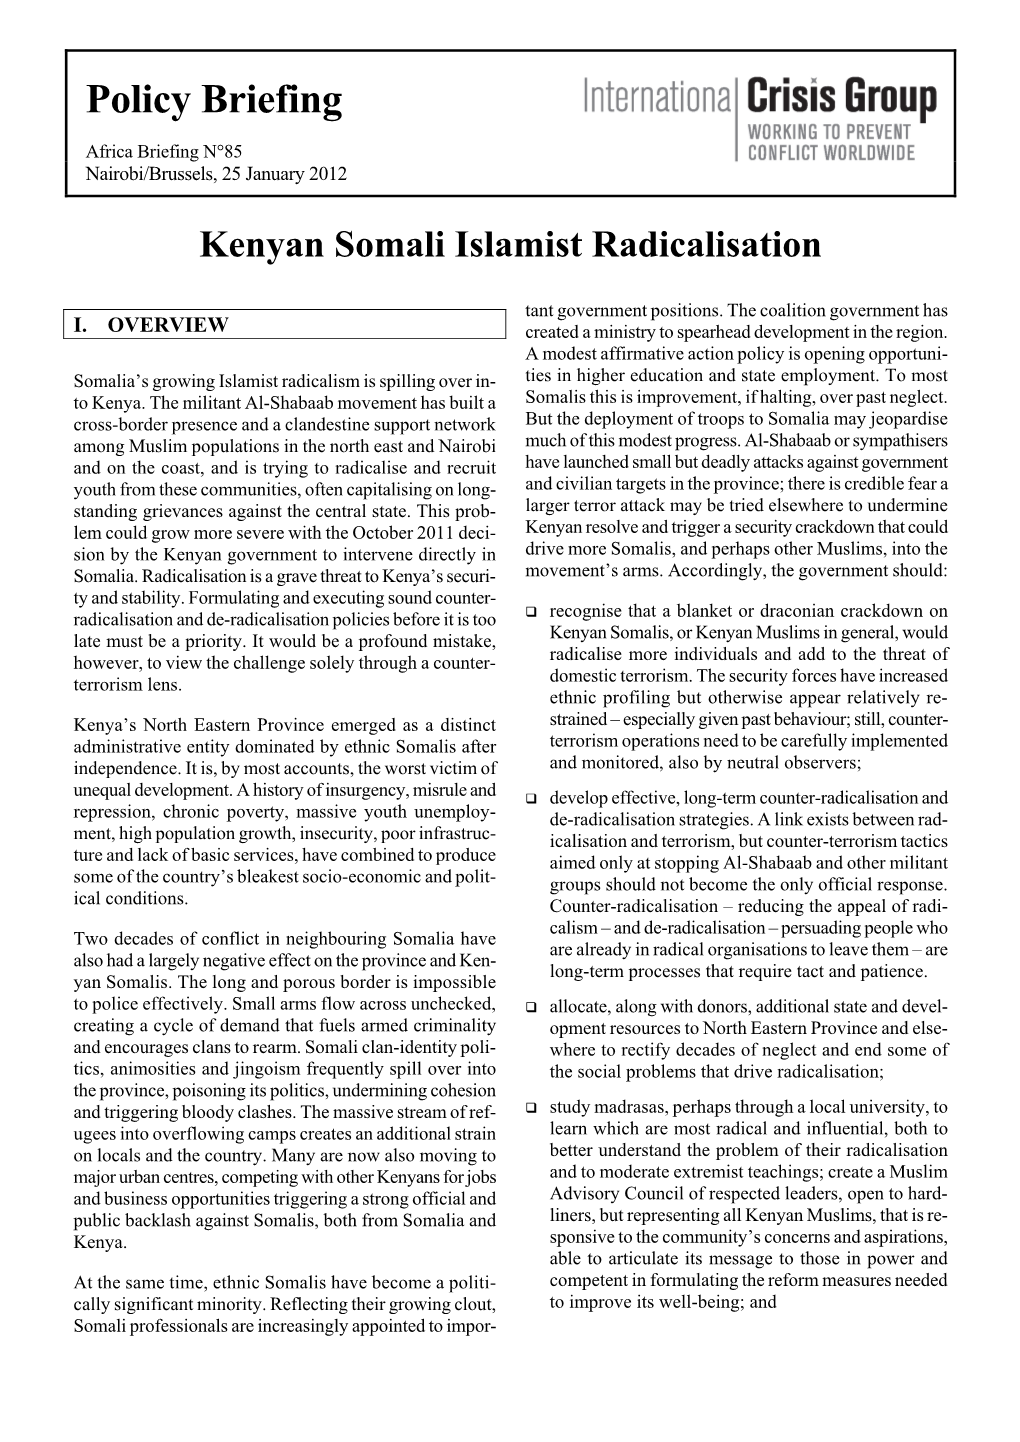 Kenyan Somali Islamist Radicalisation